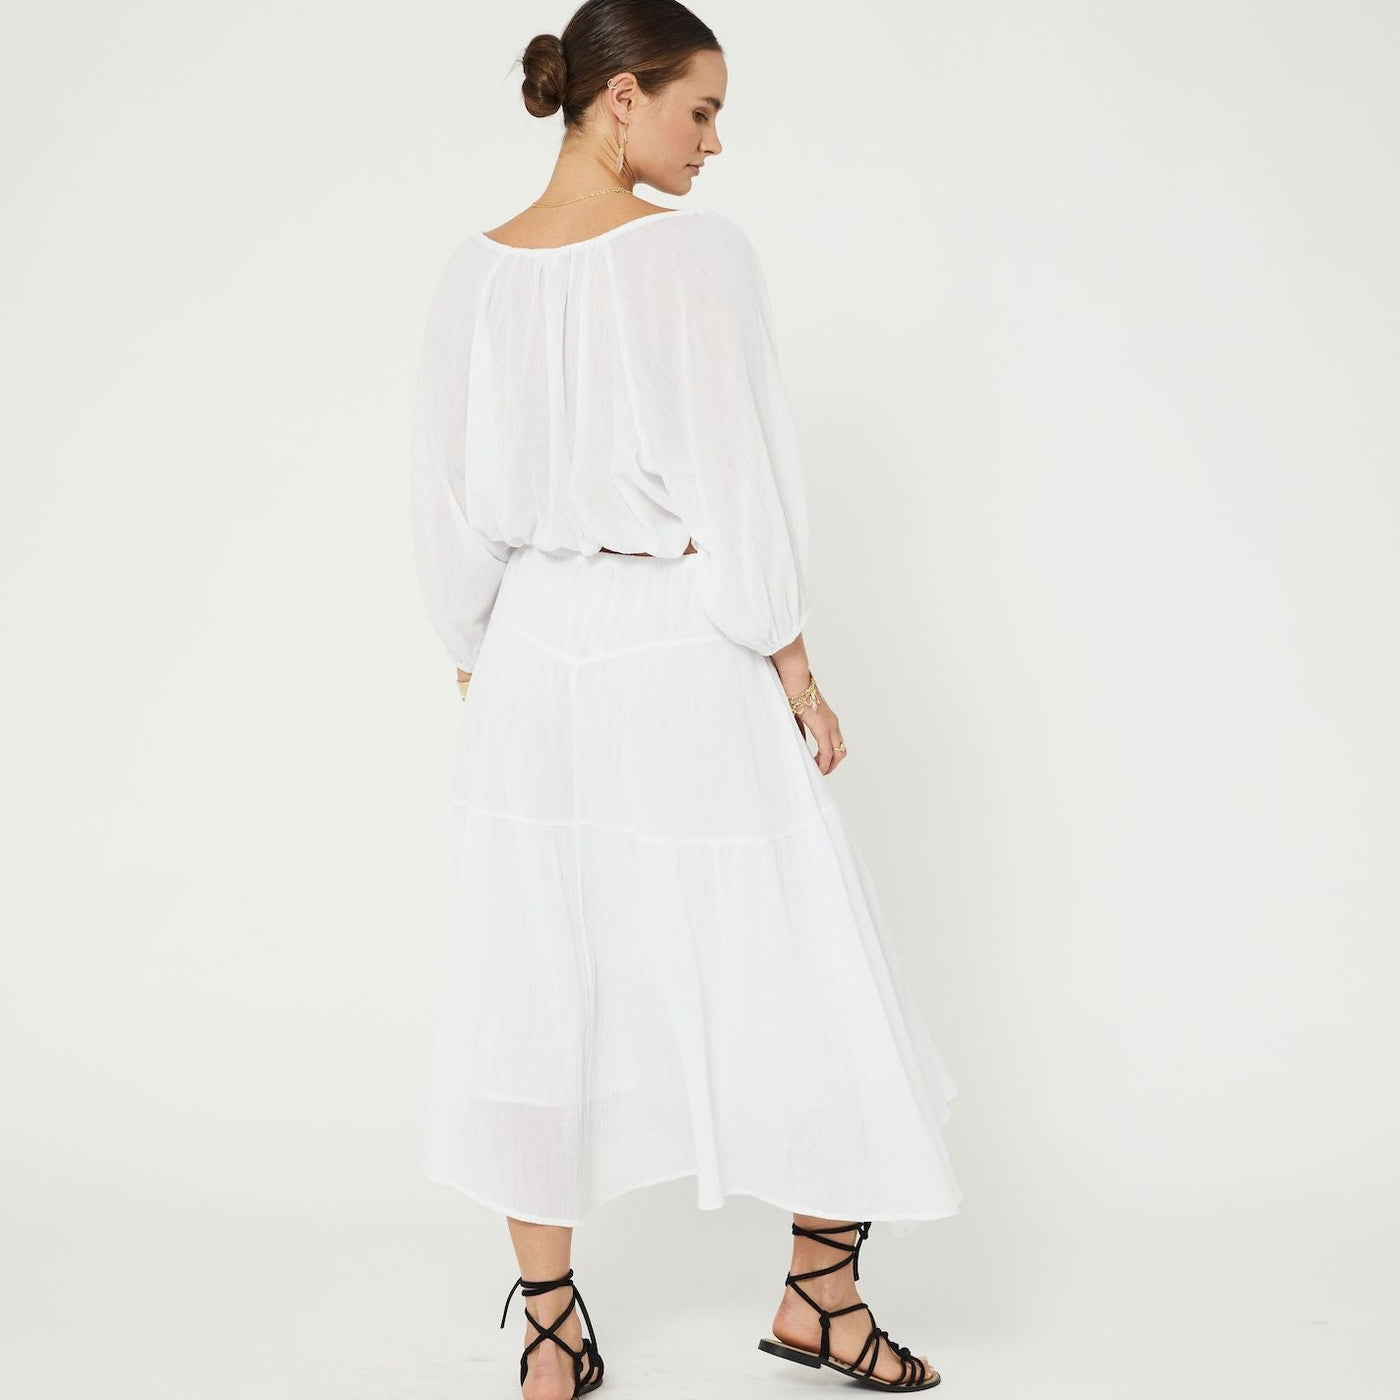 Womens boho white cotton puff sleeve drawstring blouse back studio  image